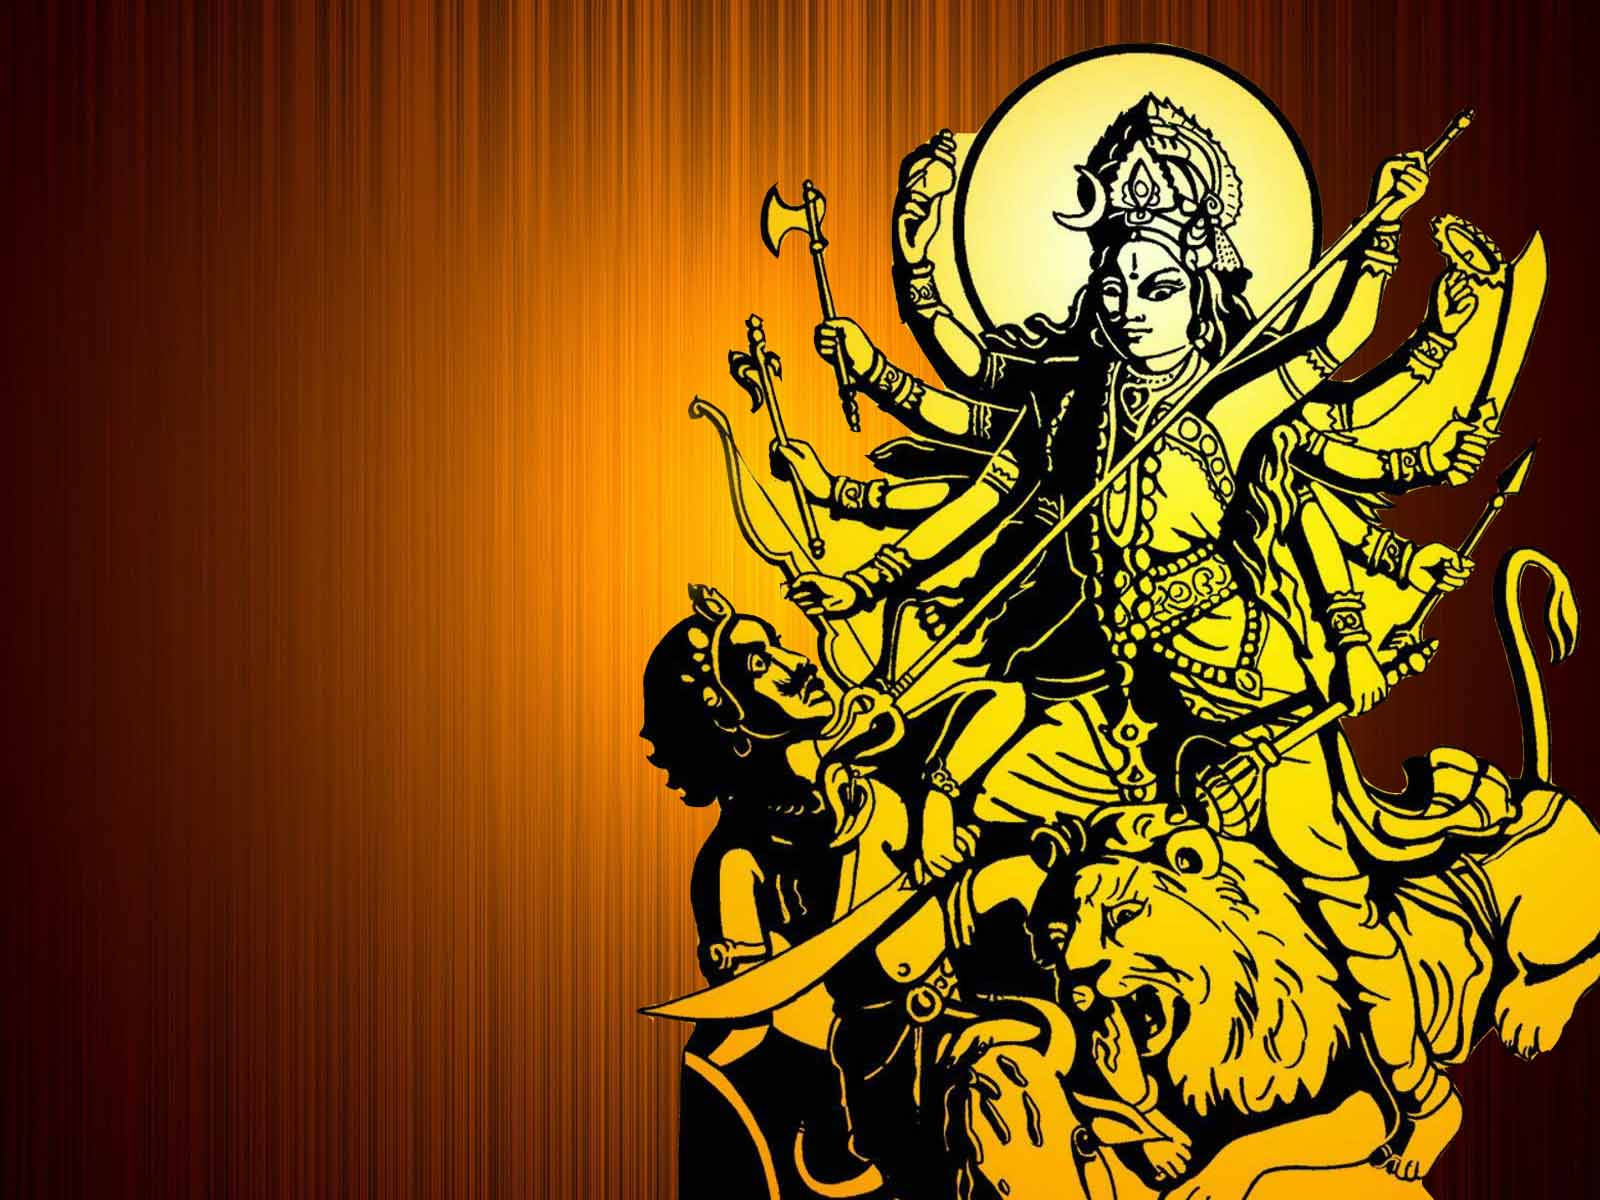 Maa Kali And Shiva Yellow Aesthetic Sketch On Orange Background